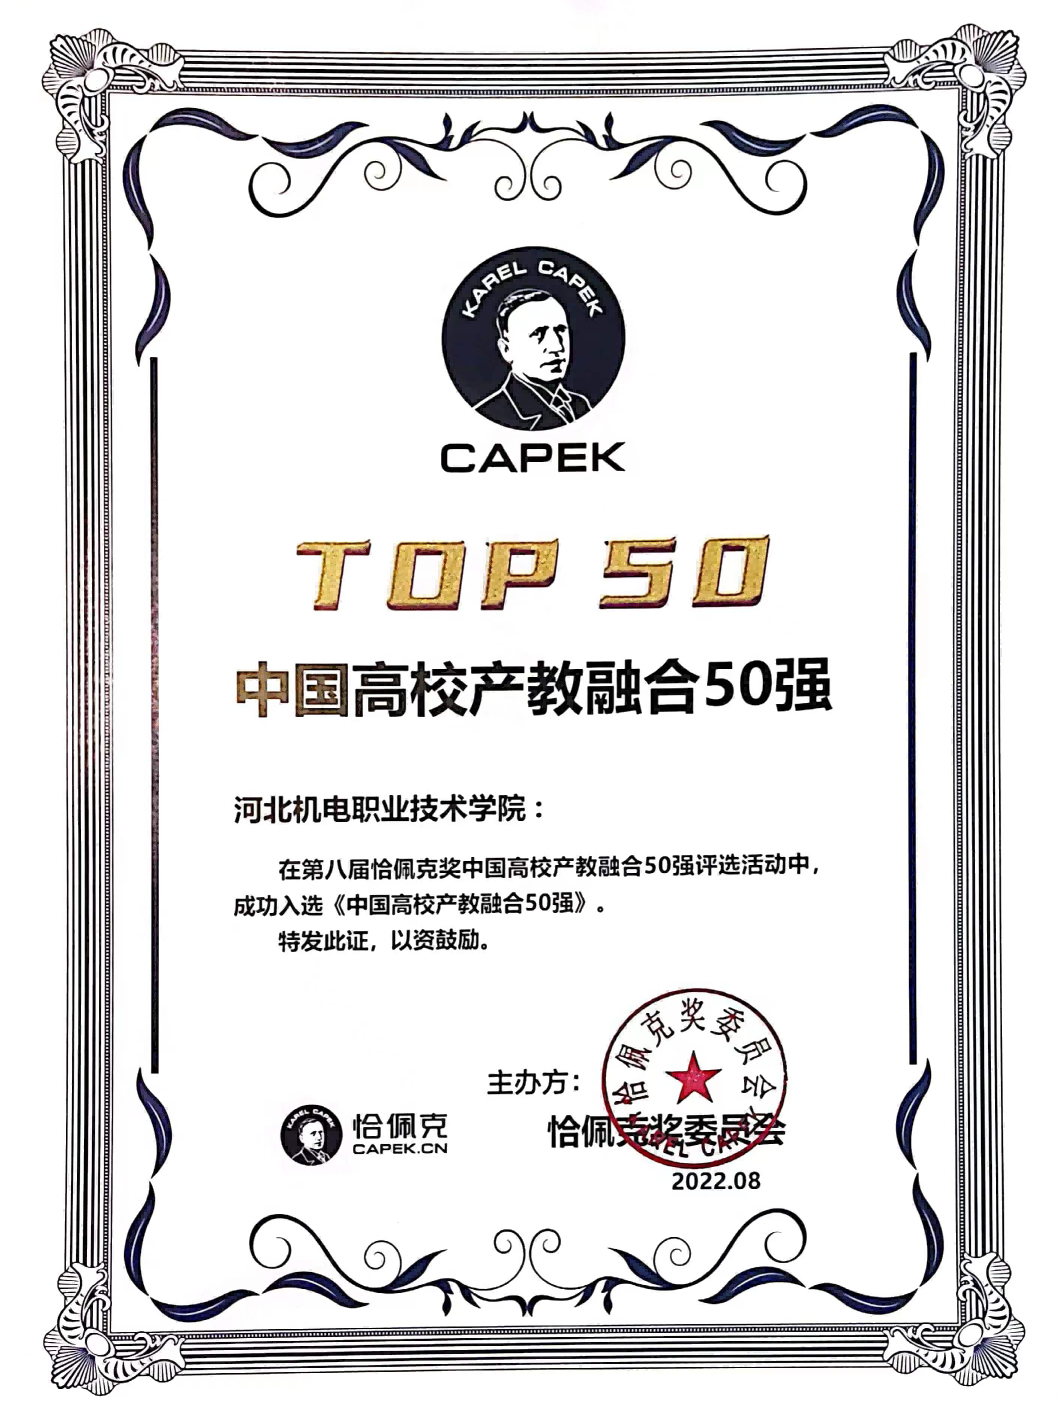 beat365官方网站荣获第八届恰佩克奖“中国高校产教融合50强”